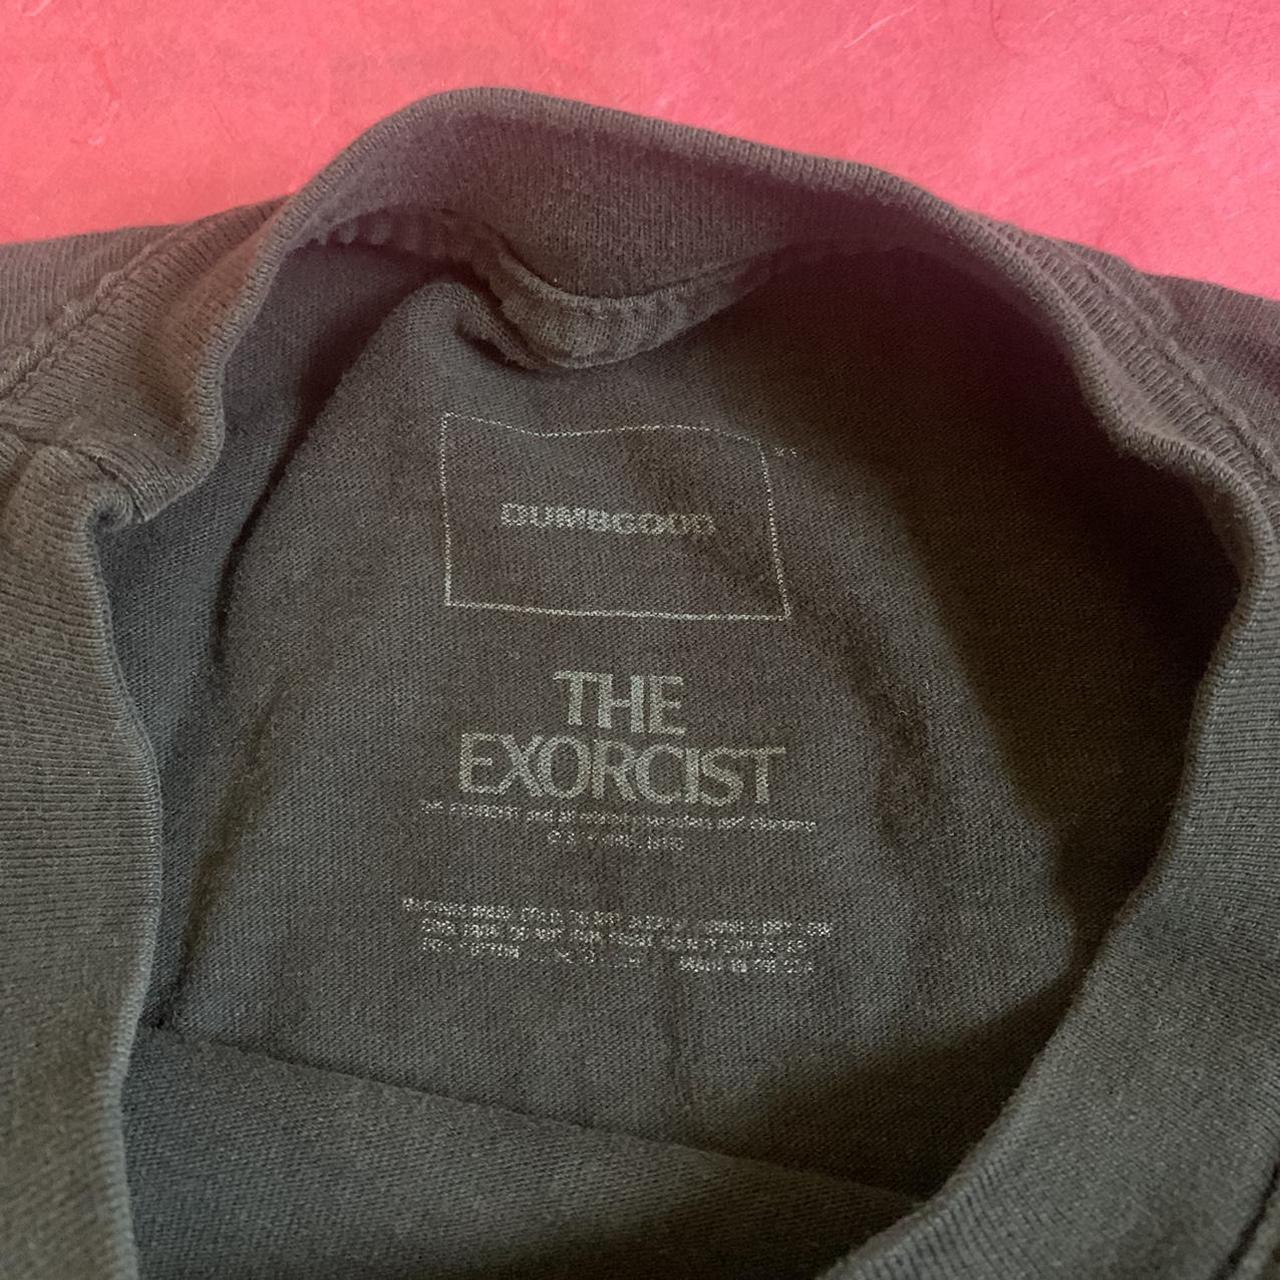 Product Image 3 - The Exorcist Shirt by Dumbgood.